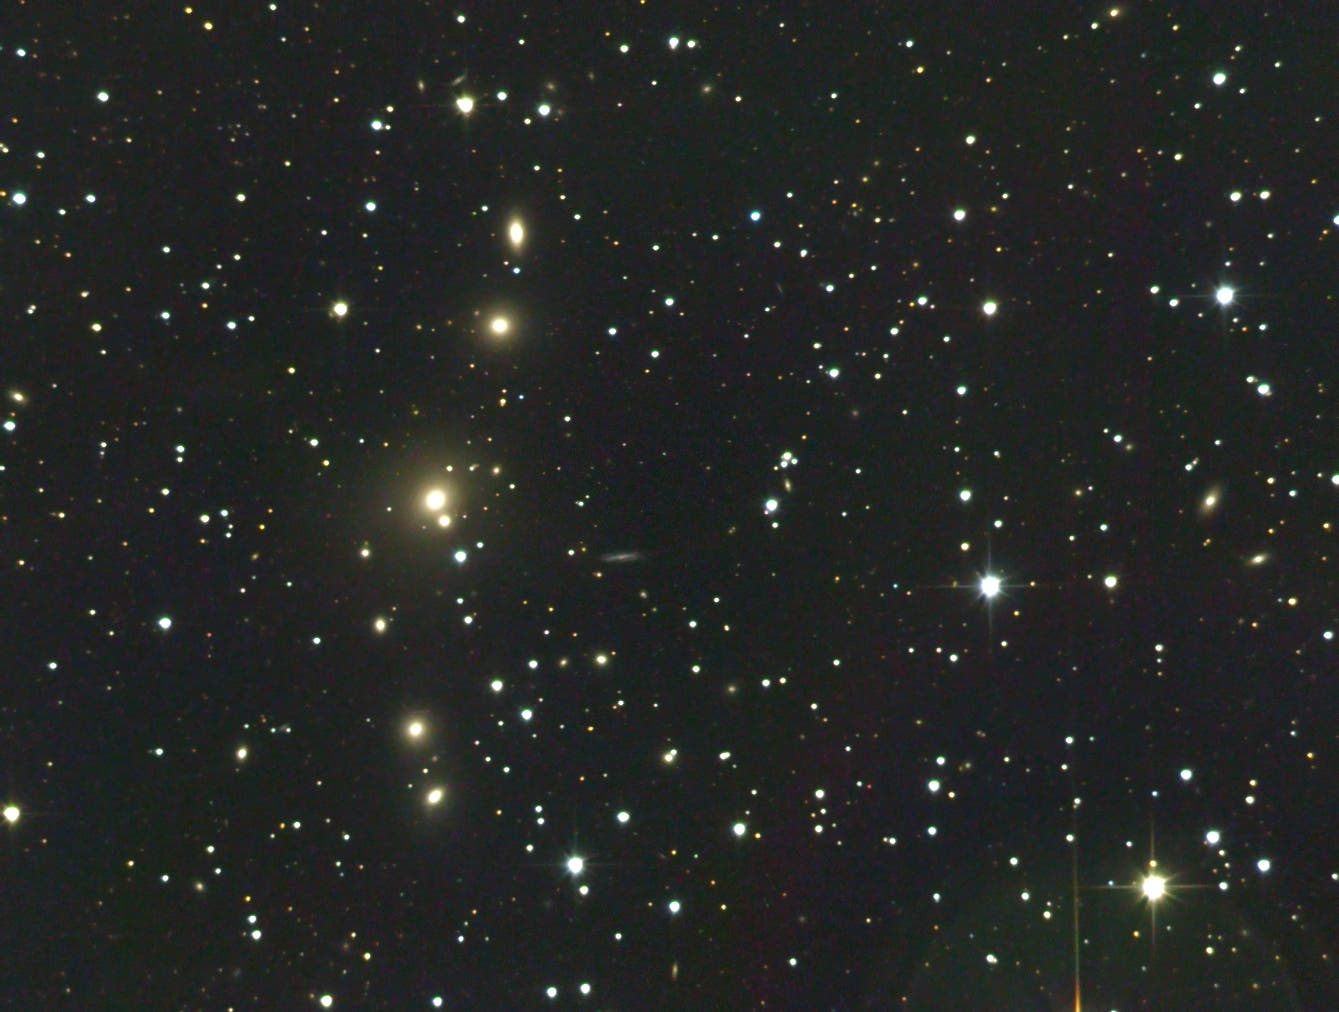 Die NGC-383-Galaxienkette (Arp 331) in den Fischen